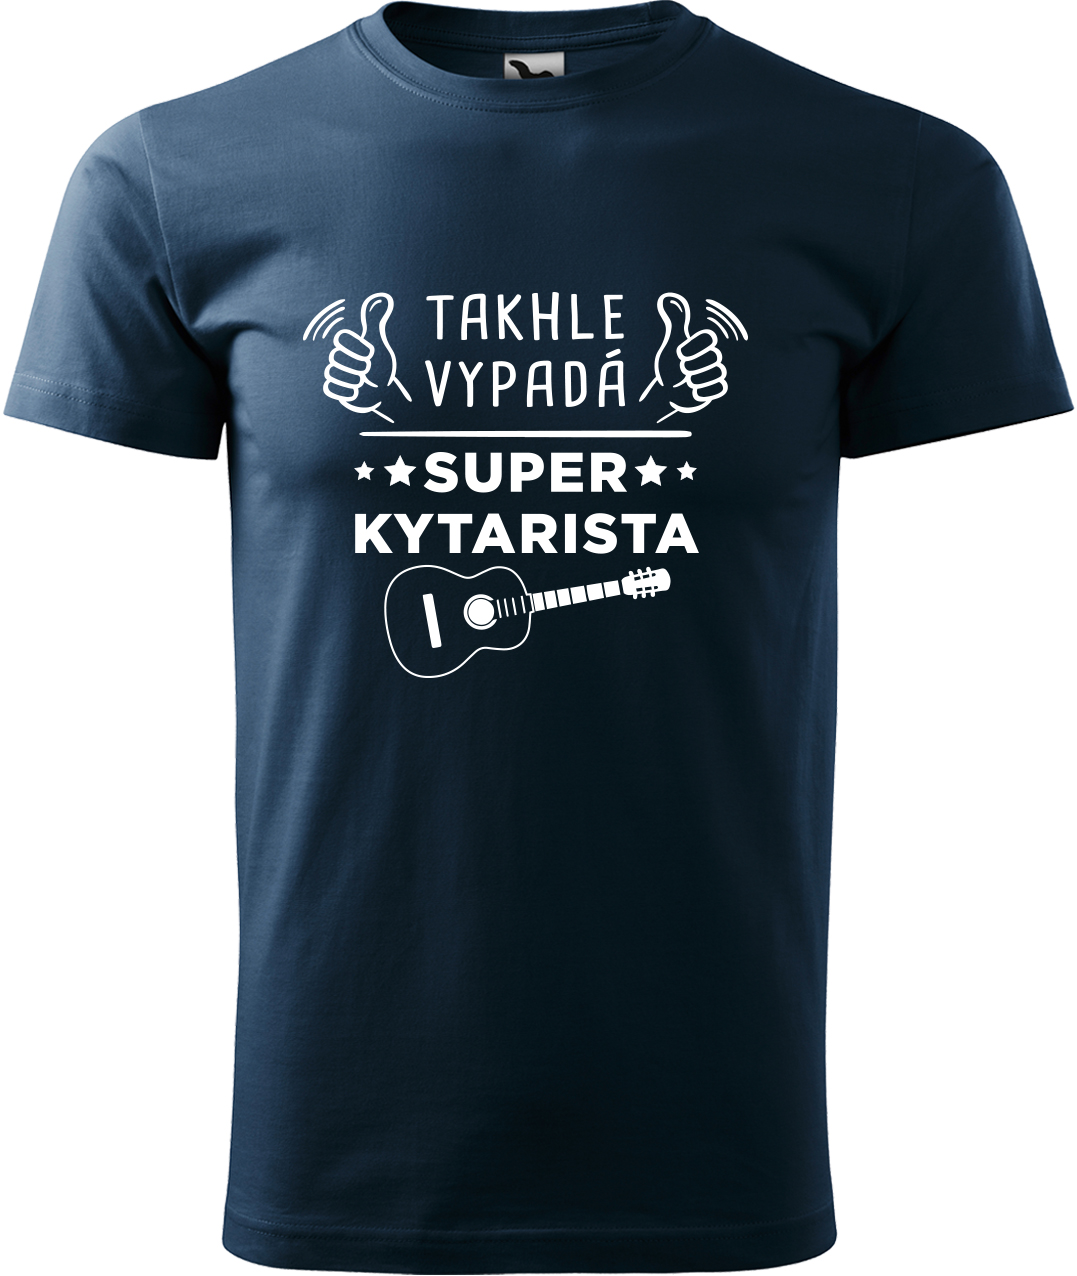 Pánské tričko s kytarou - Super kytarista Velikost: L, Barva: Námořní modrá (02), Střih: pánský